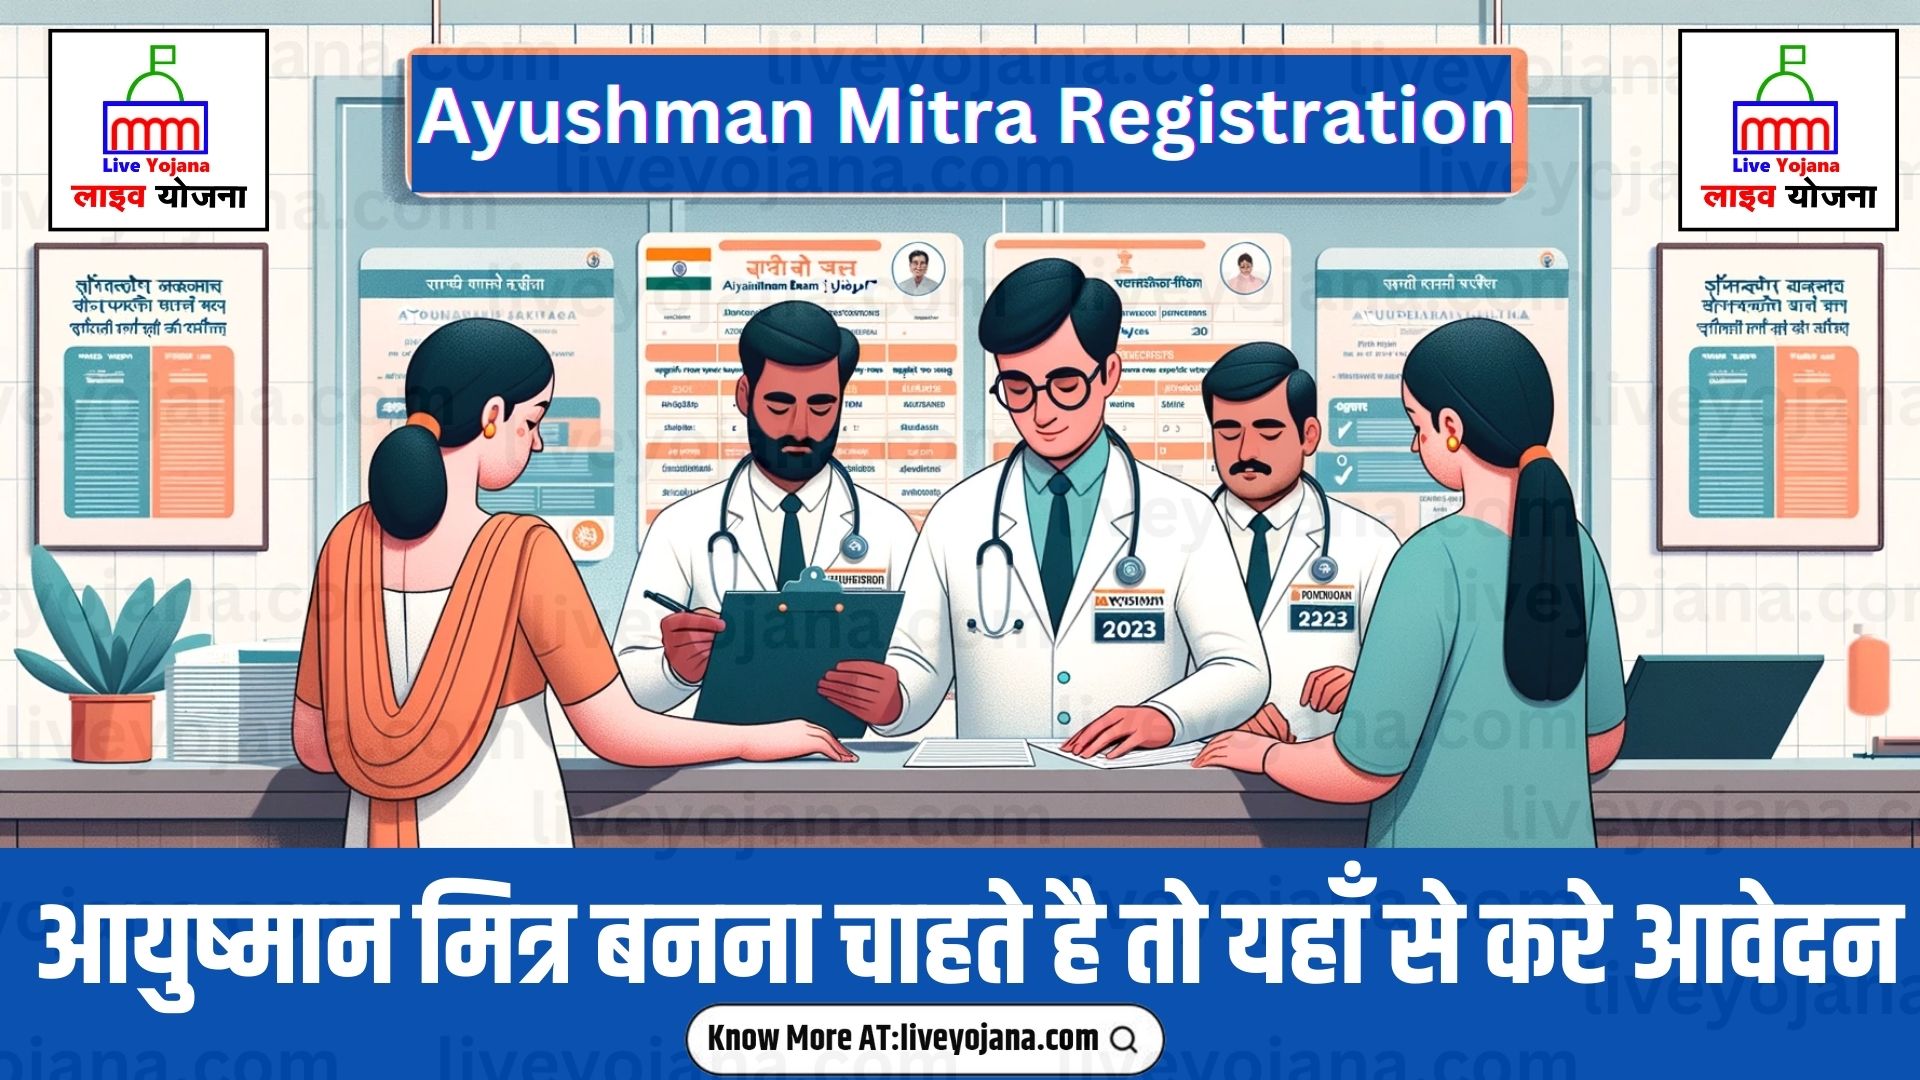 Ayushman Mitra Registration 2023 Ayushman Mitra Registration and Login Ayushman Bharat Yojana 2023 Important Documents Registration and Login